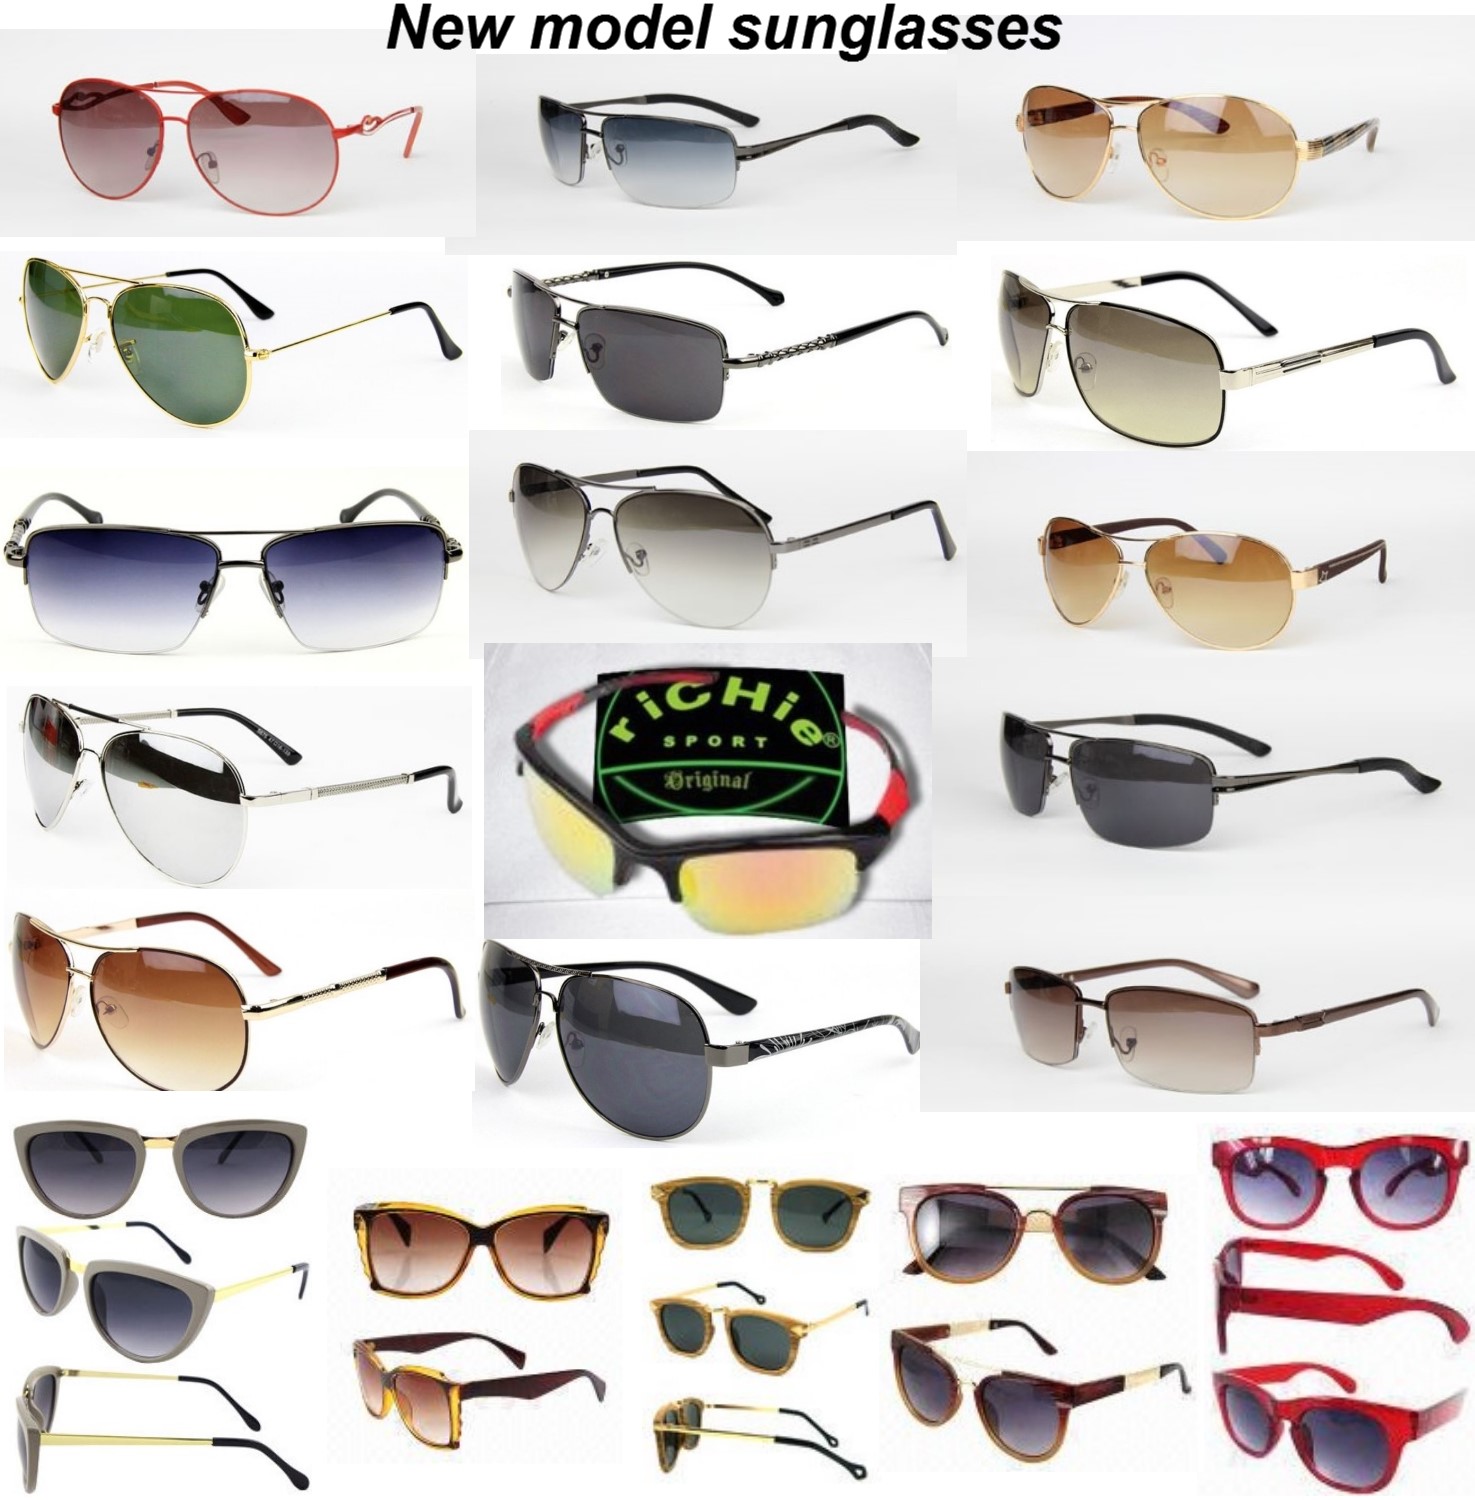 New-model-sunglasses-2017.jpeg